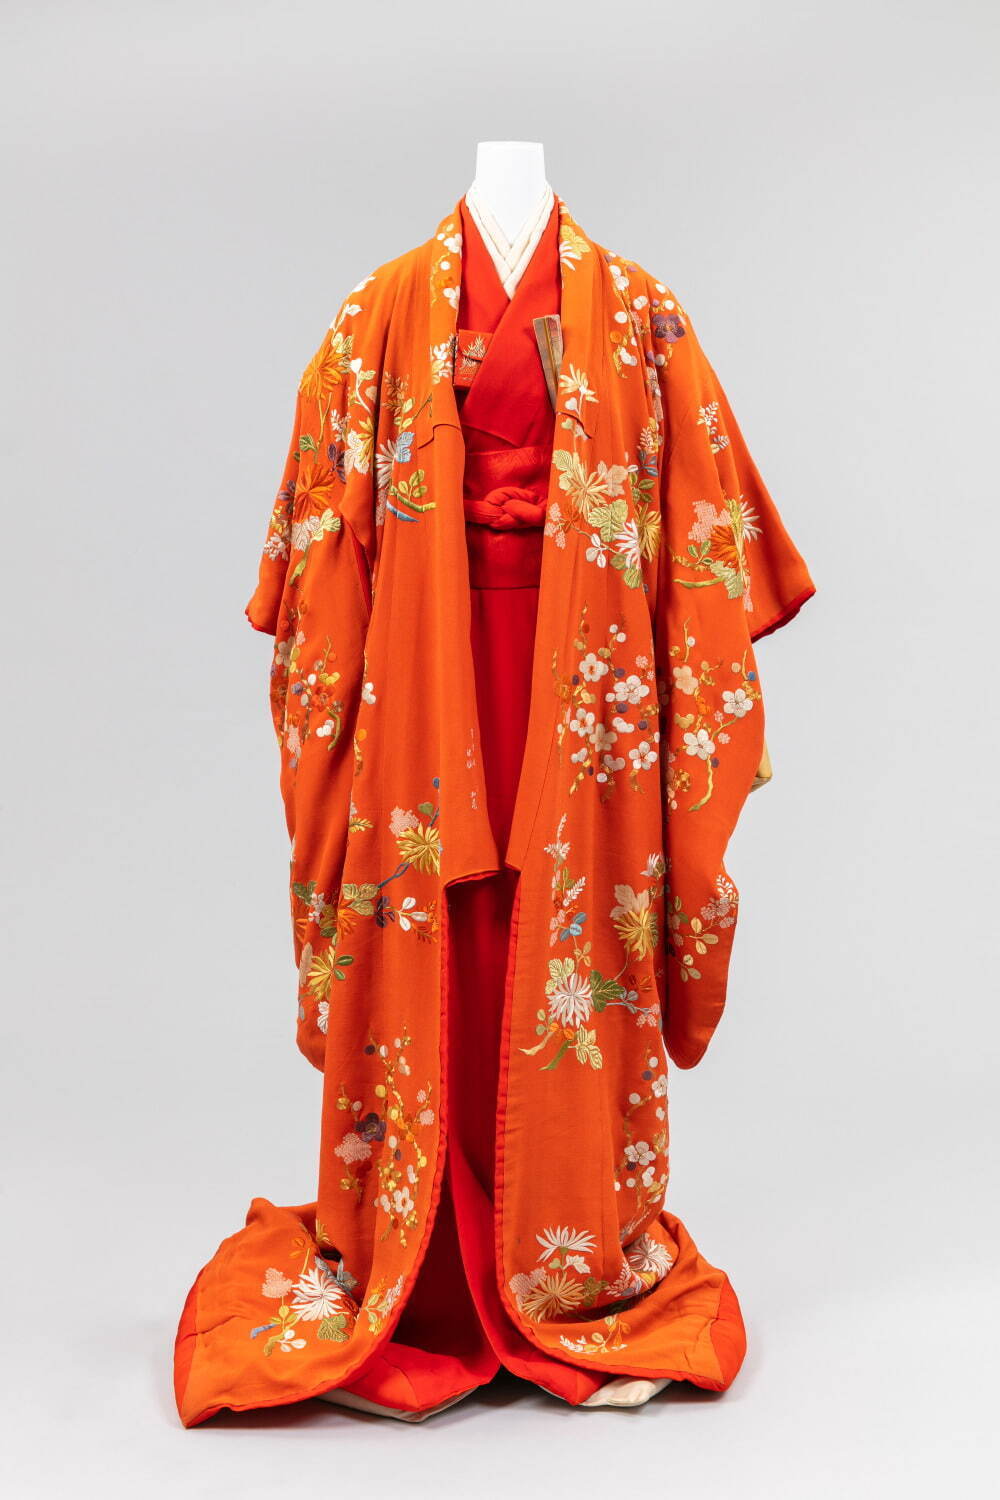 再現 女性の服装1500年 京都の染織技術の粋 文化学園服飾博物館で 古墳 明治時代の時代衣裳 ファッションプレス